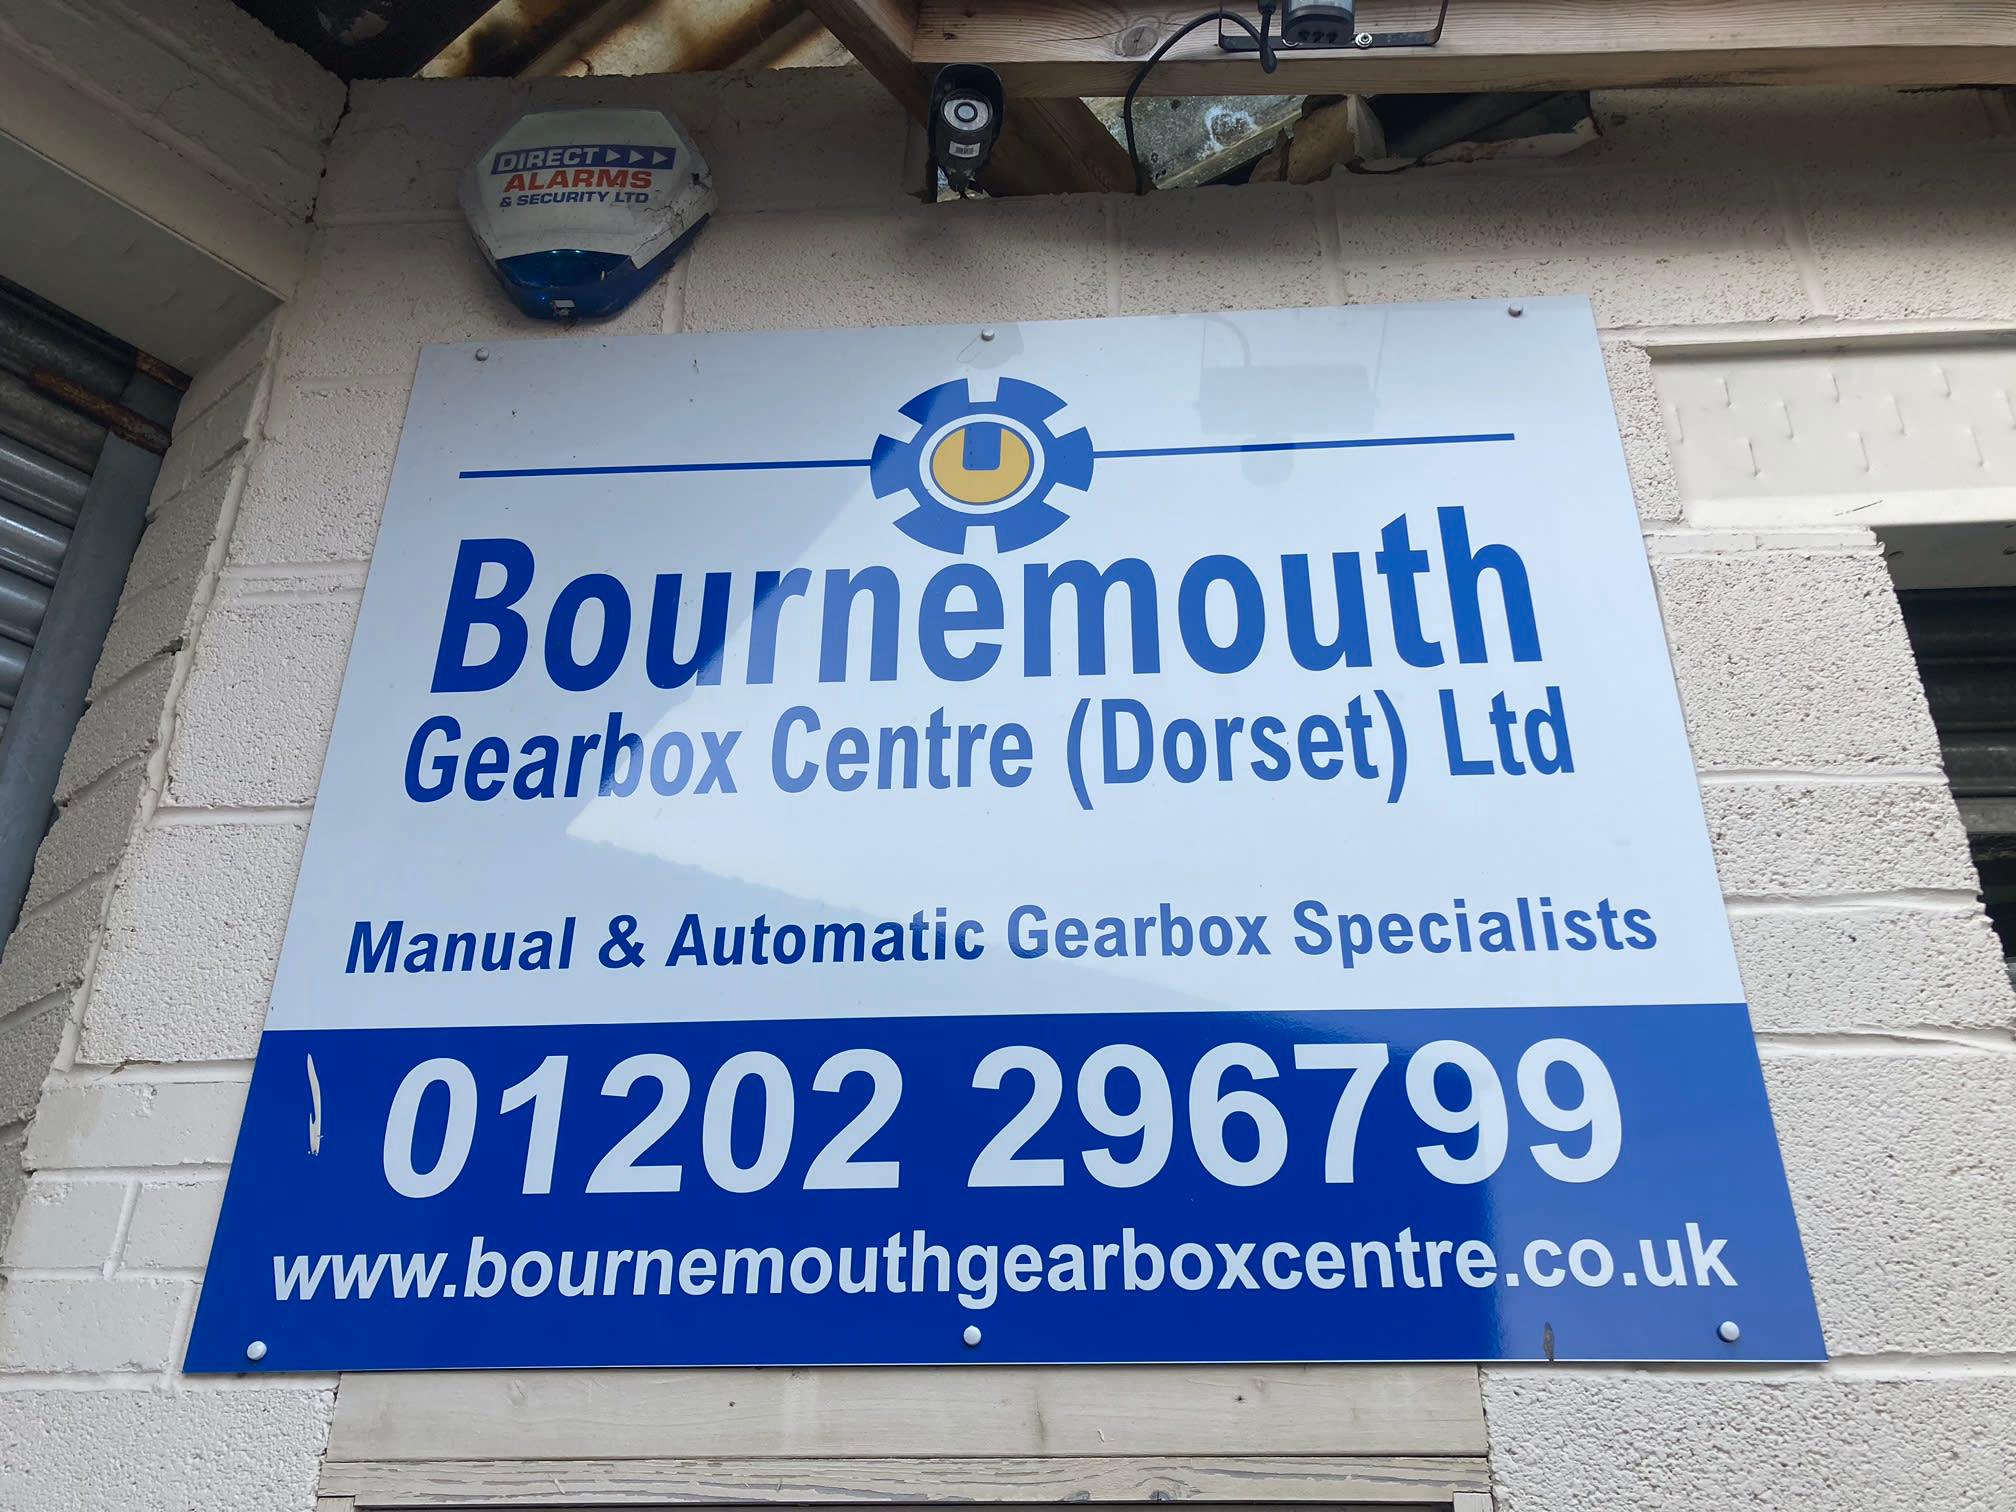 Images The Gearbox Centre Dorset Ltd